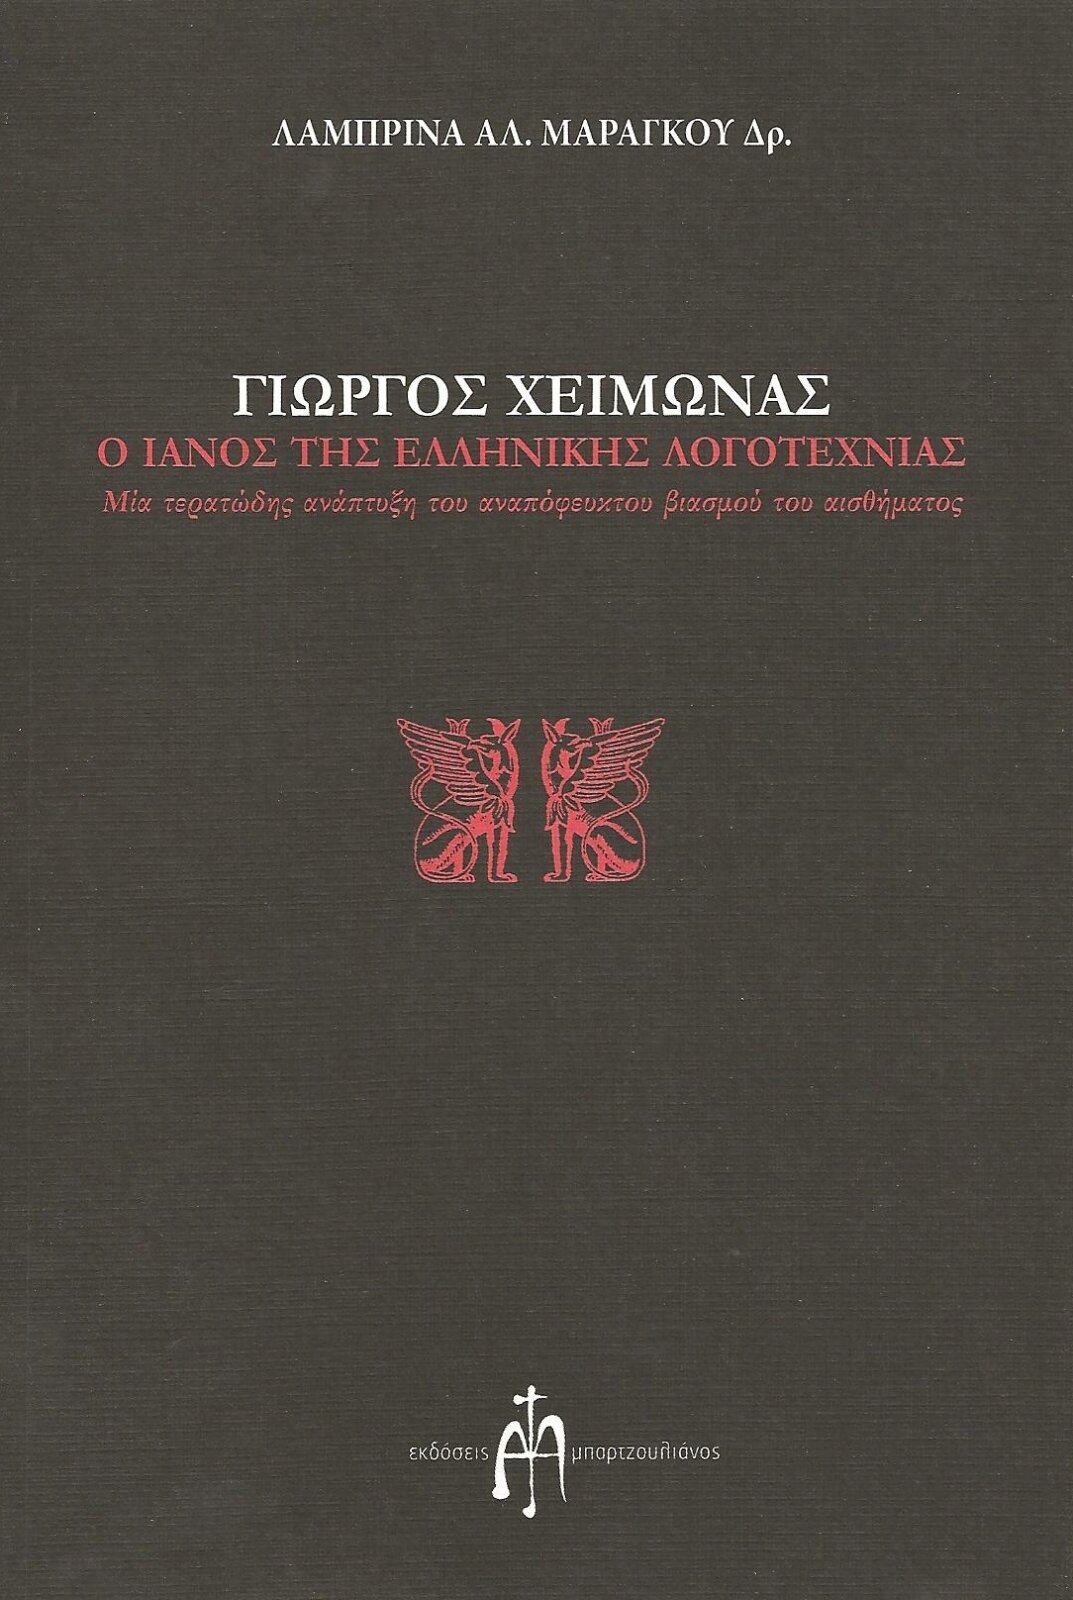 Γιώργος Χειμωνάς, ο Ιανός της ελληνικής λογοτεχνίας